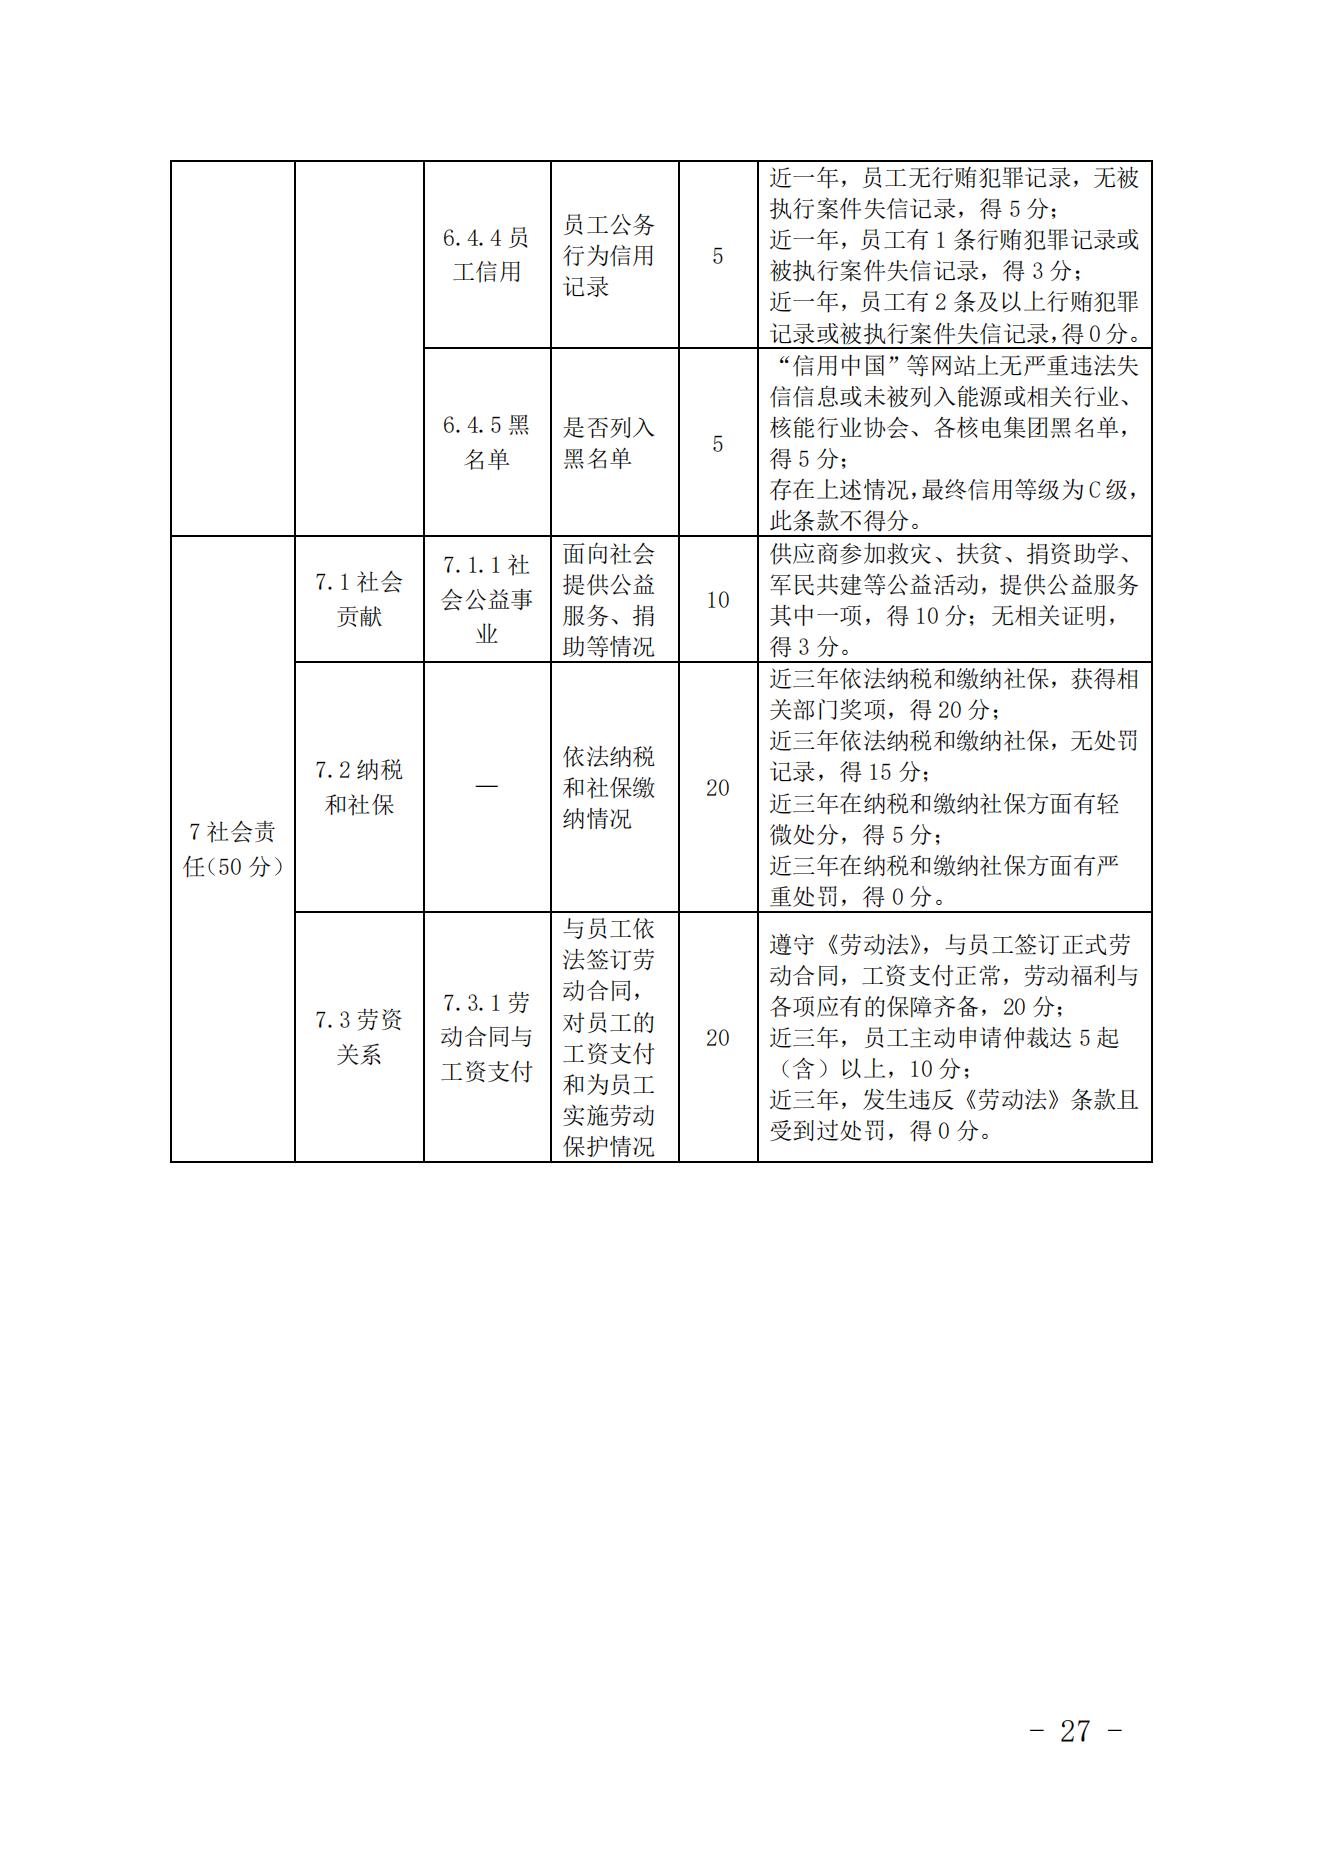 关于印发《中国核能行业协会核能行业供应商信用评价管理办法》《中国核能行业协会核能行业供应商信用评价规范》的通知_26.jpg